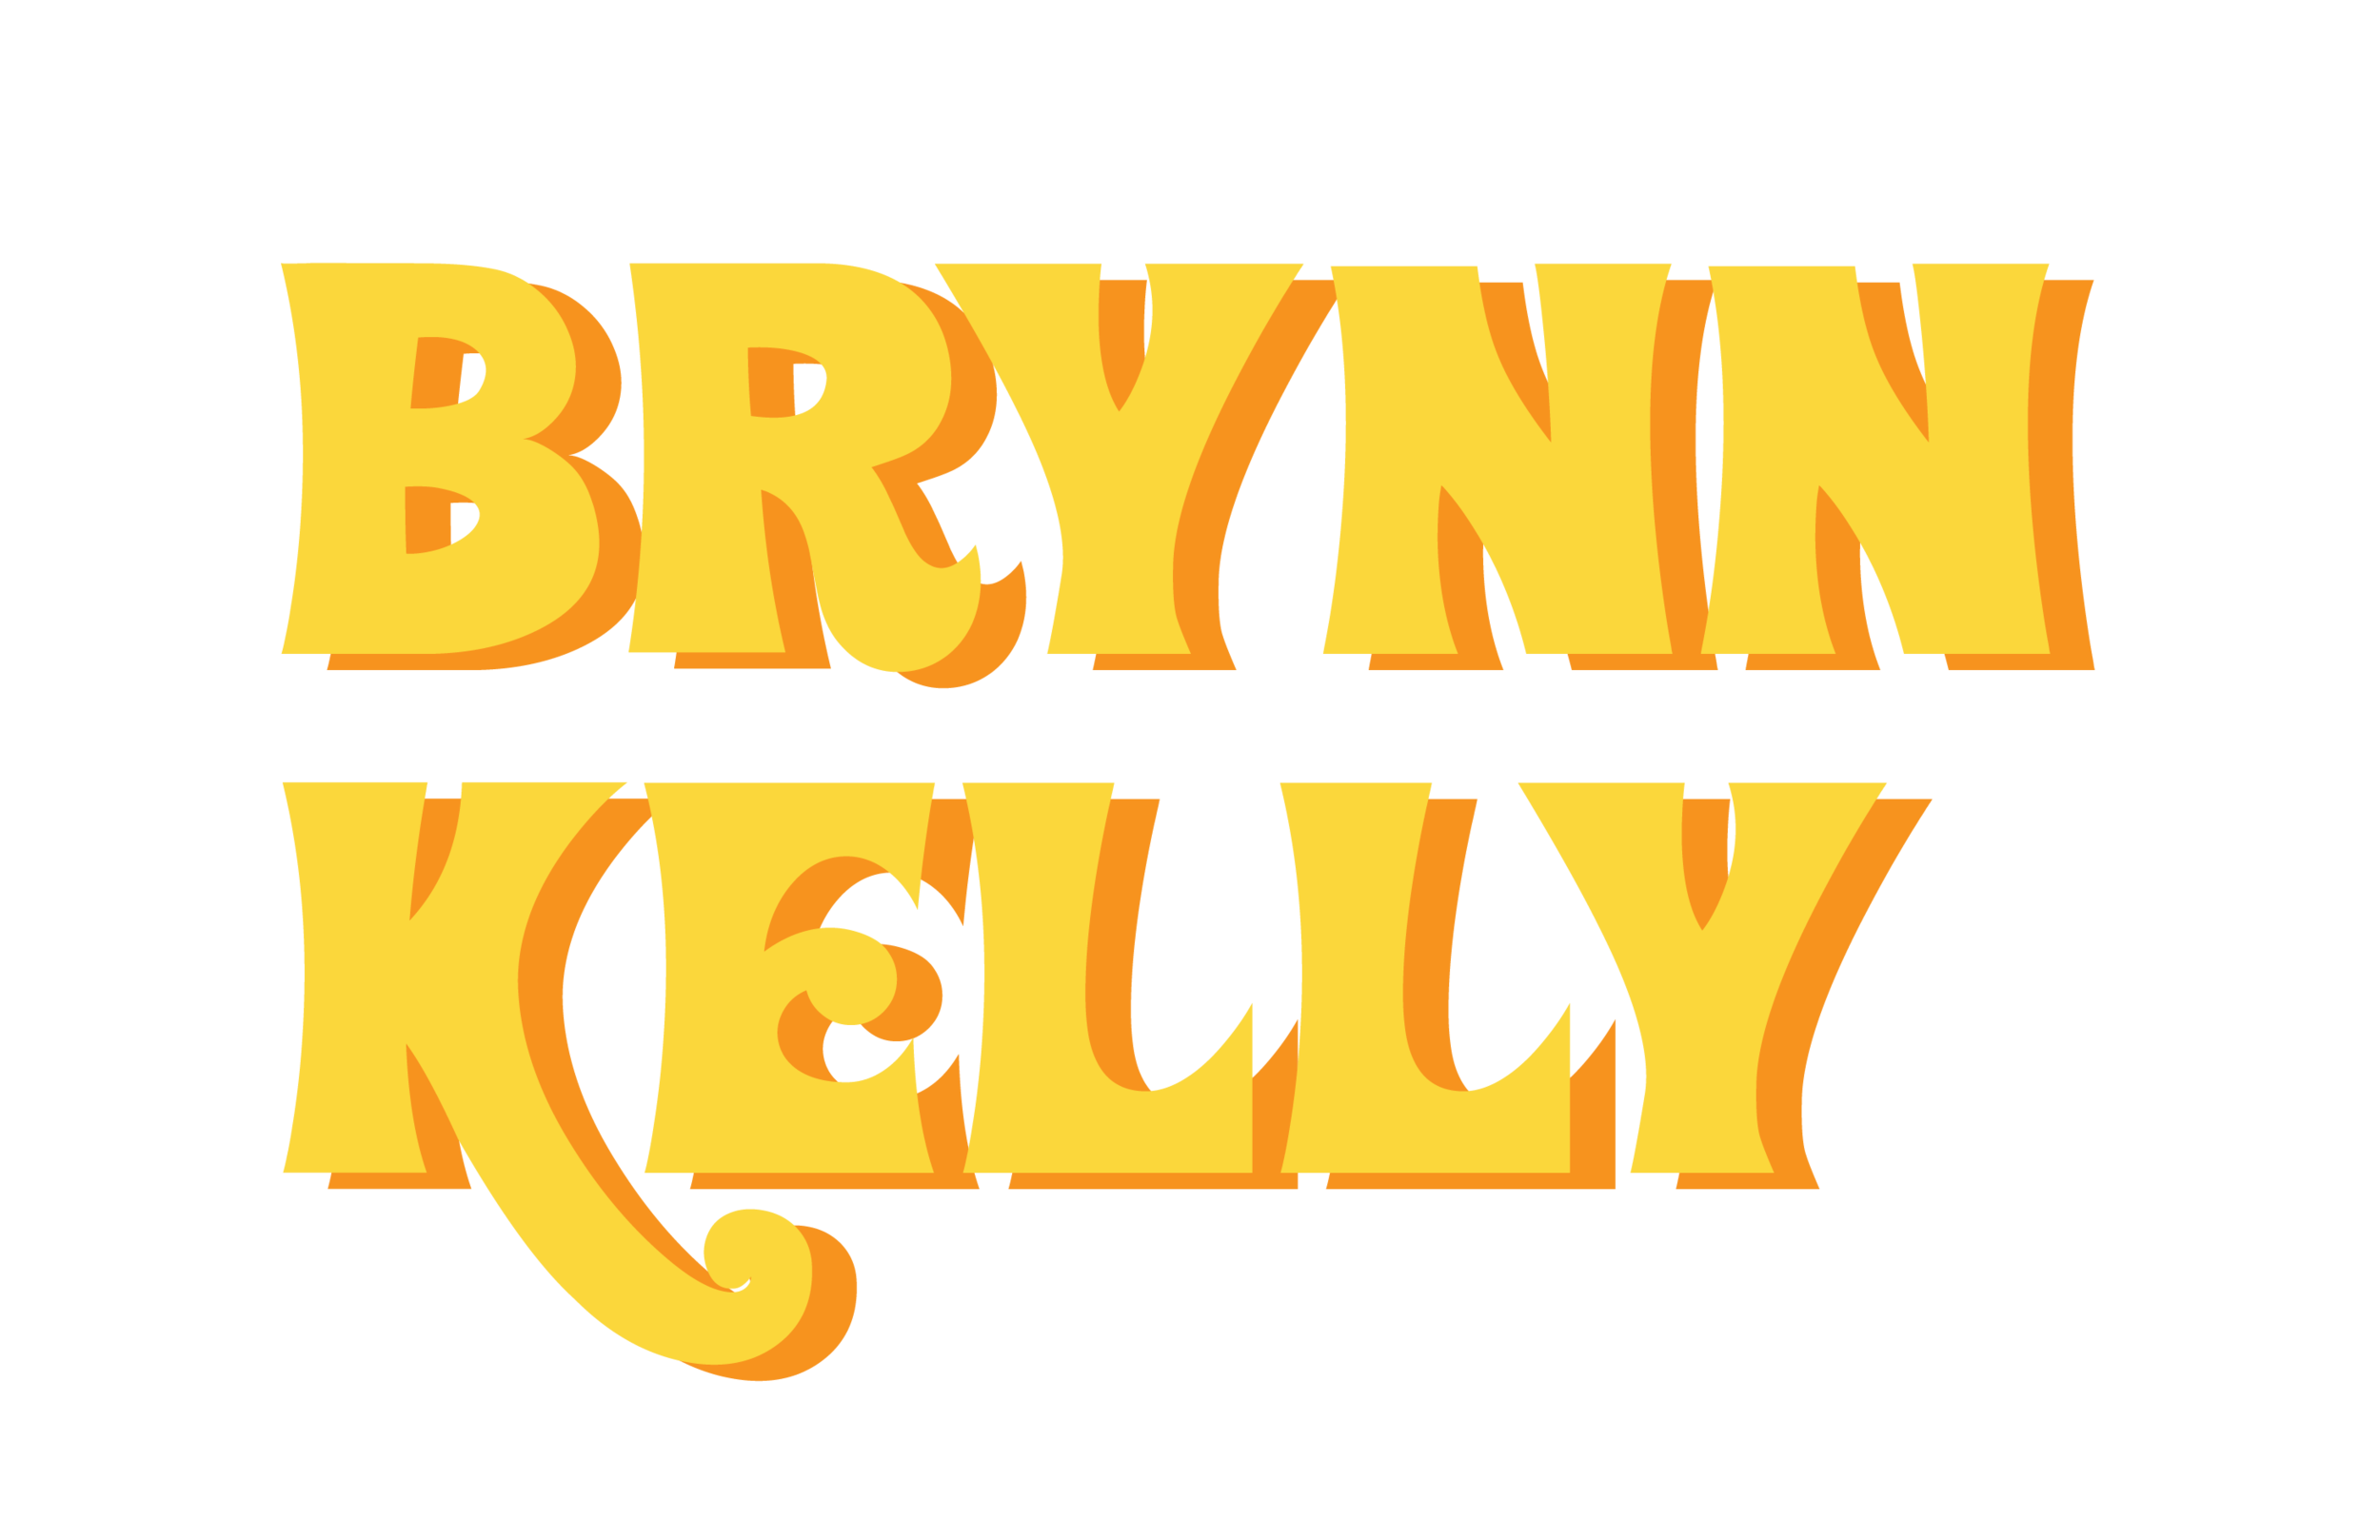 Brynn Kelly